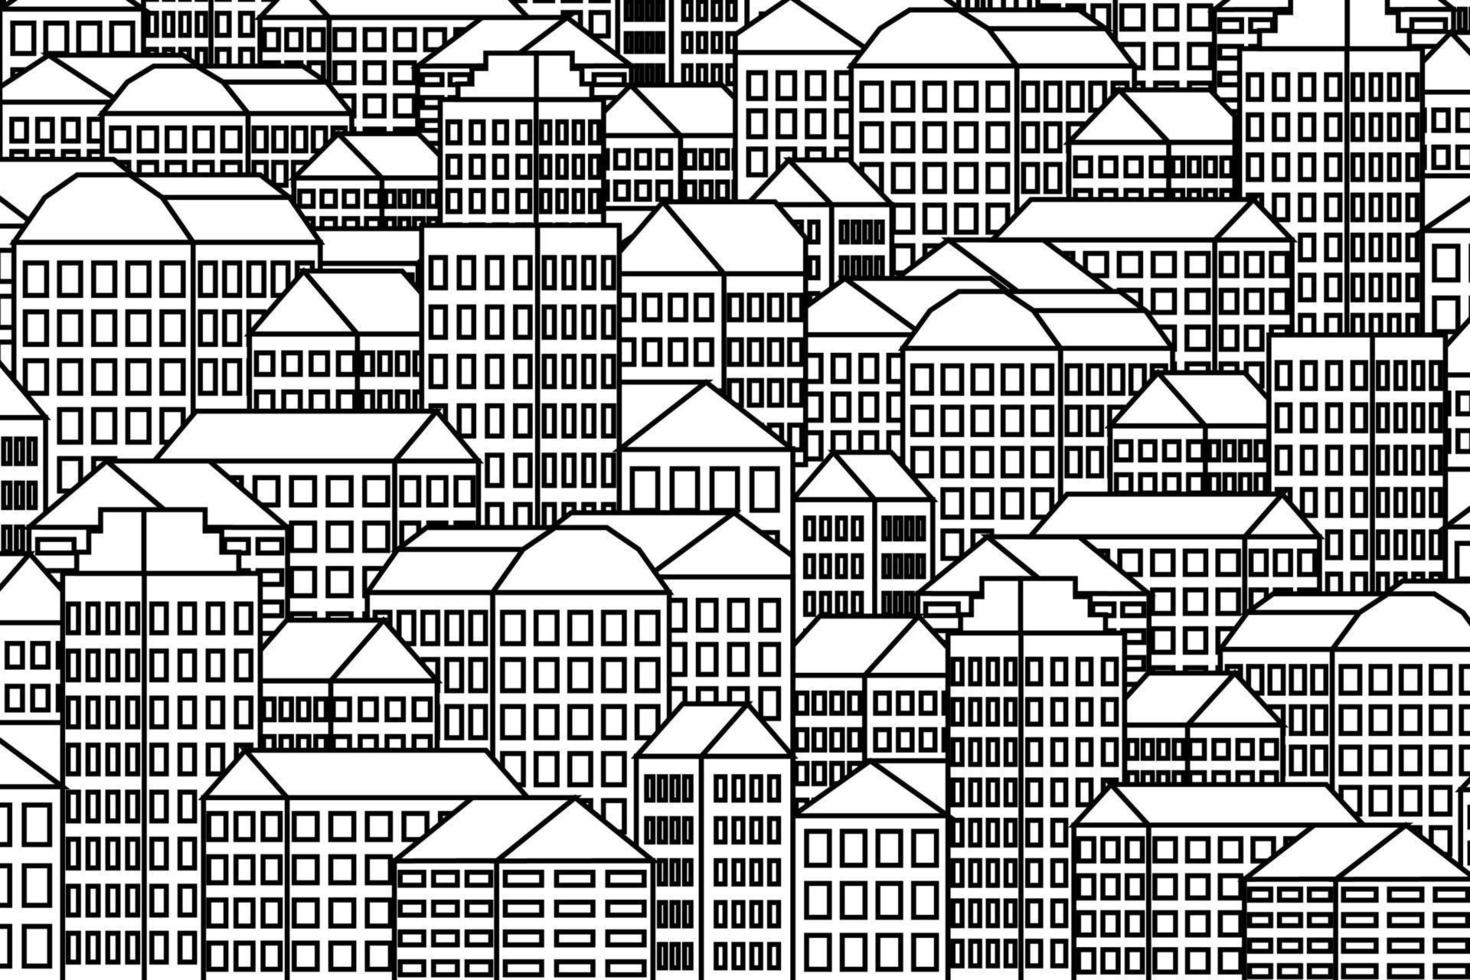 padrão de fundo da cidade com arranha-céus de mão de casas. ilustração em preto e branco dos desenhos animados com linha fina preta. padrão de paisagem urbana vista urbana. vetor